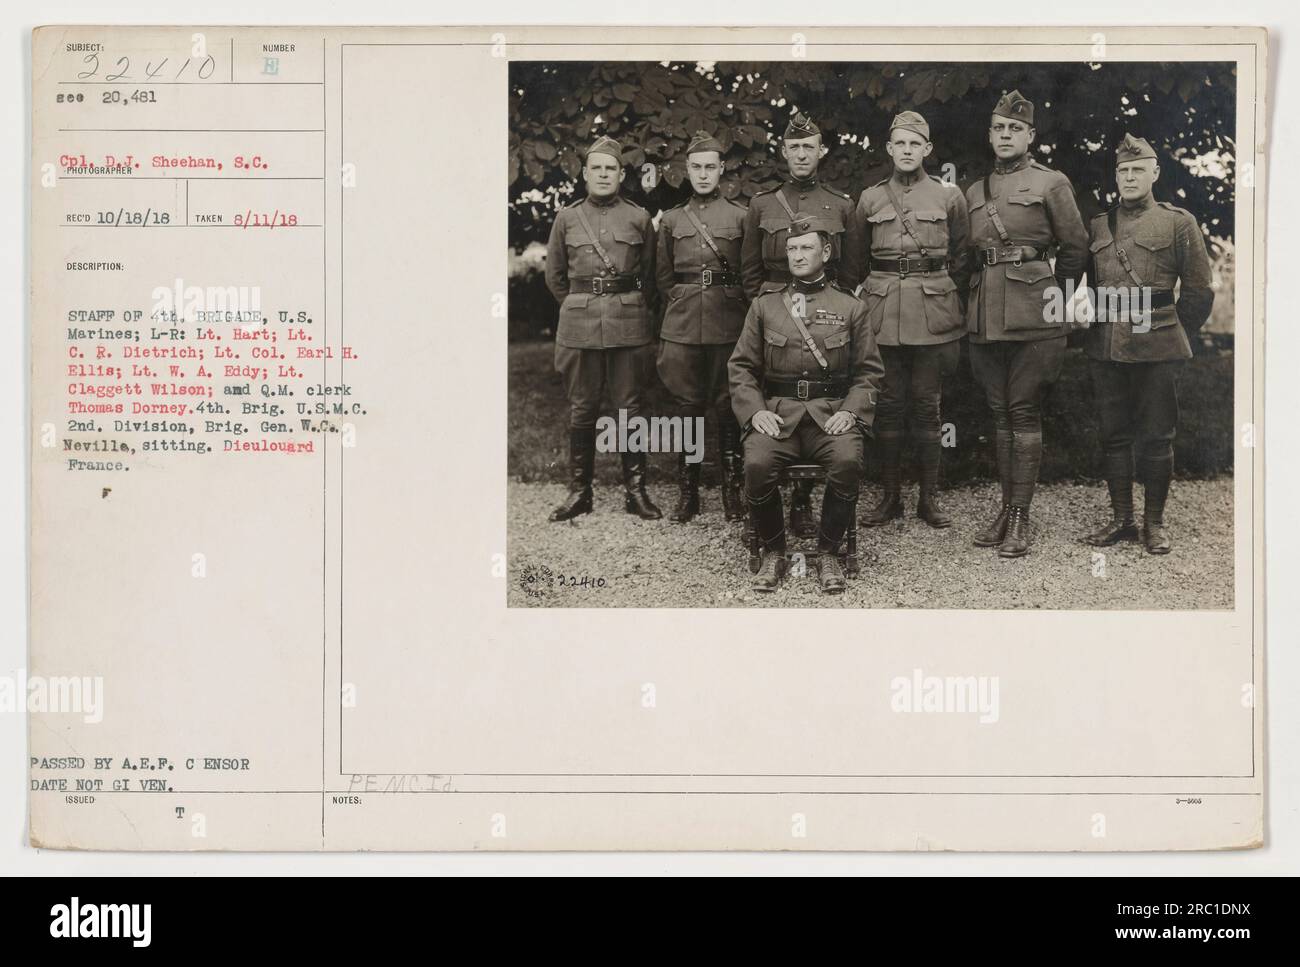 Die Abbildung zeigt die Mitarbeiter der 4. Brigade, USA Marines in Dieulouard, Frankreich. Auf dem Foto, von links nach rechts, sind LT. Hart, LT. C.R. Dietrich, Oberstleutnant Earl H. Ellis, Leutnant W.A. Eddy, Leutnant Claggett Wilson und Q.M. Der Angestellte Thomas Dorney. Brig sitzt in der ersten Reihe. Gen. W.C. Neville von der 2. Division. Das Datum des Bildes wurde nicht angegeben. Dieses Foto wurde am 11. August 1918 aufgenommen und ist Teil der Sammlung 111-SC-22410. Stockfoto